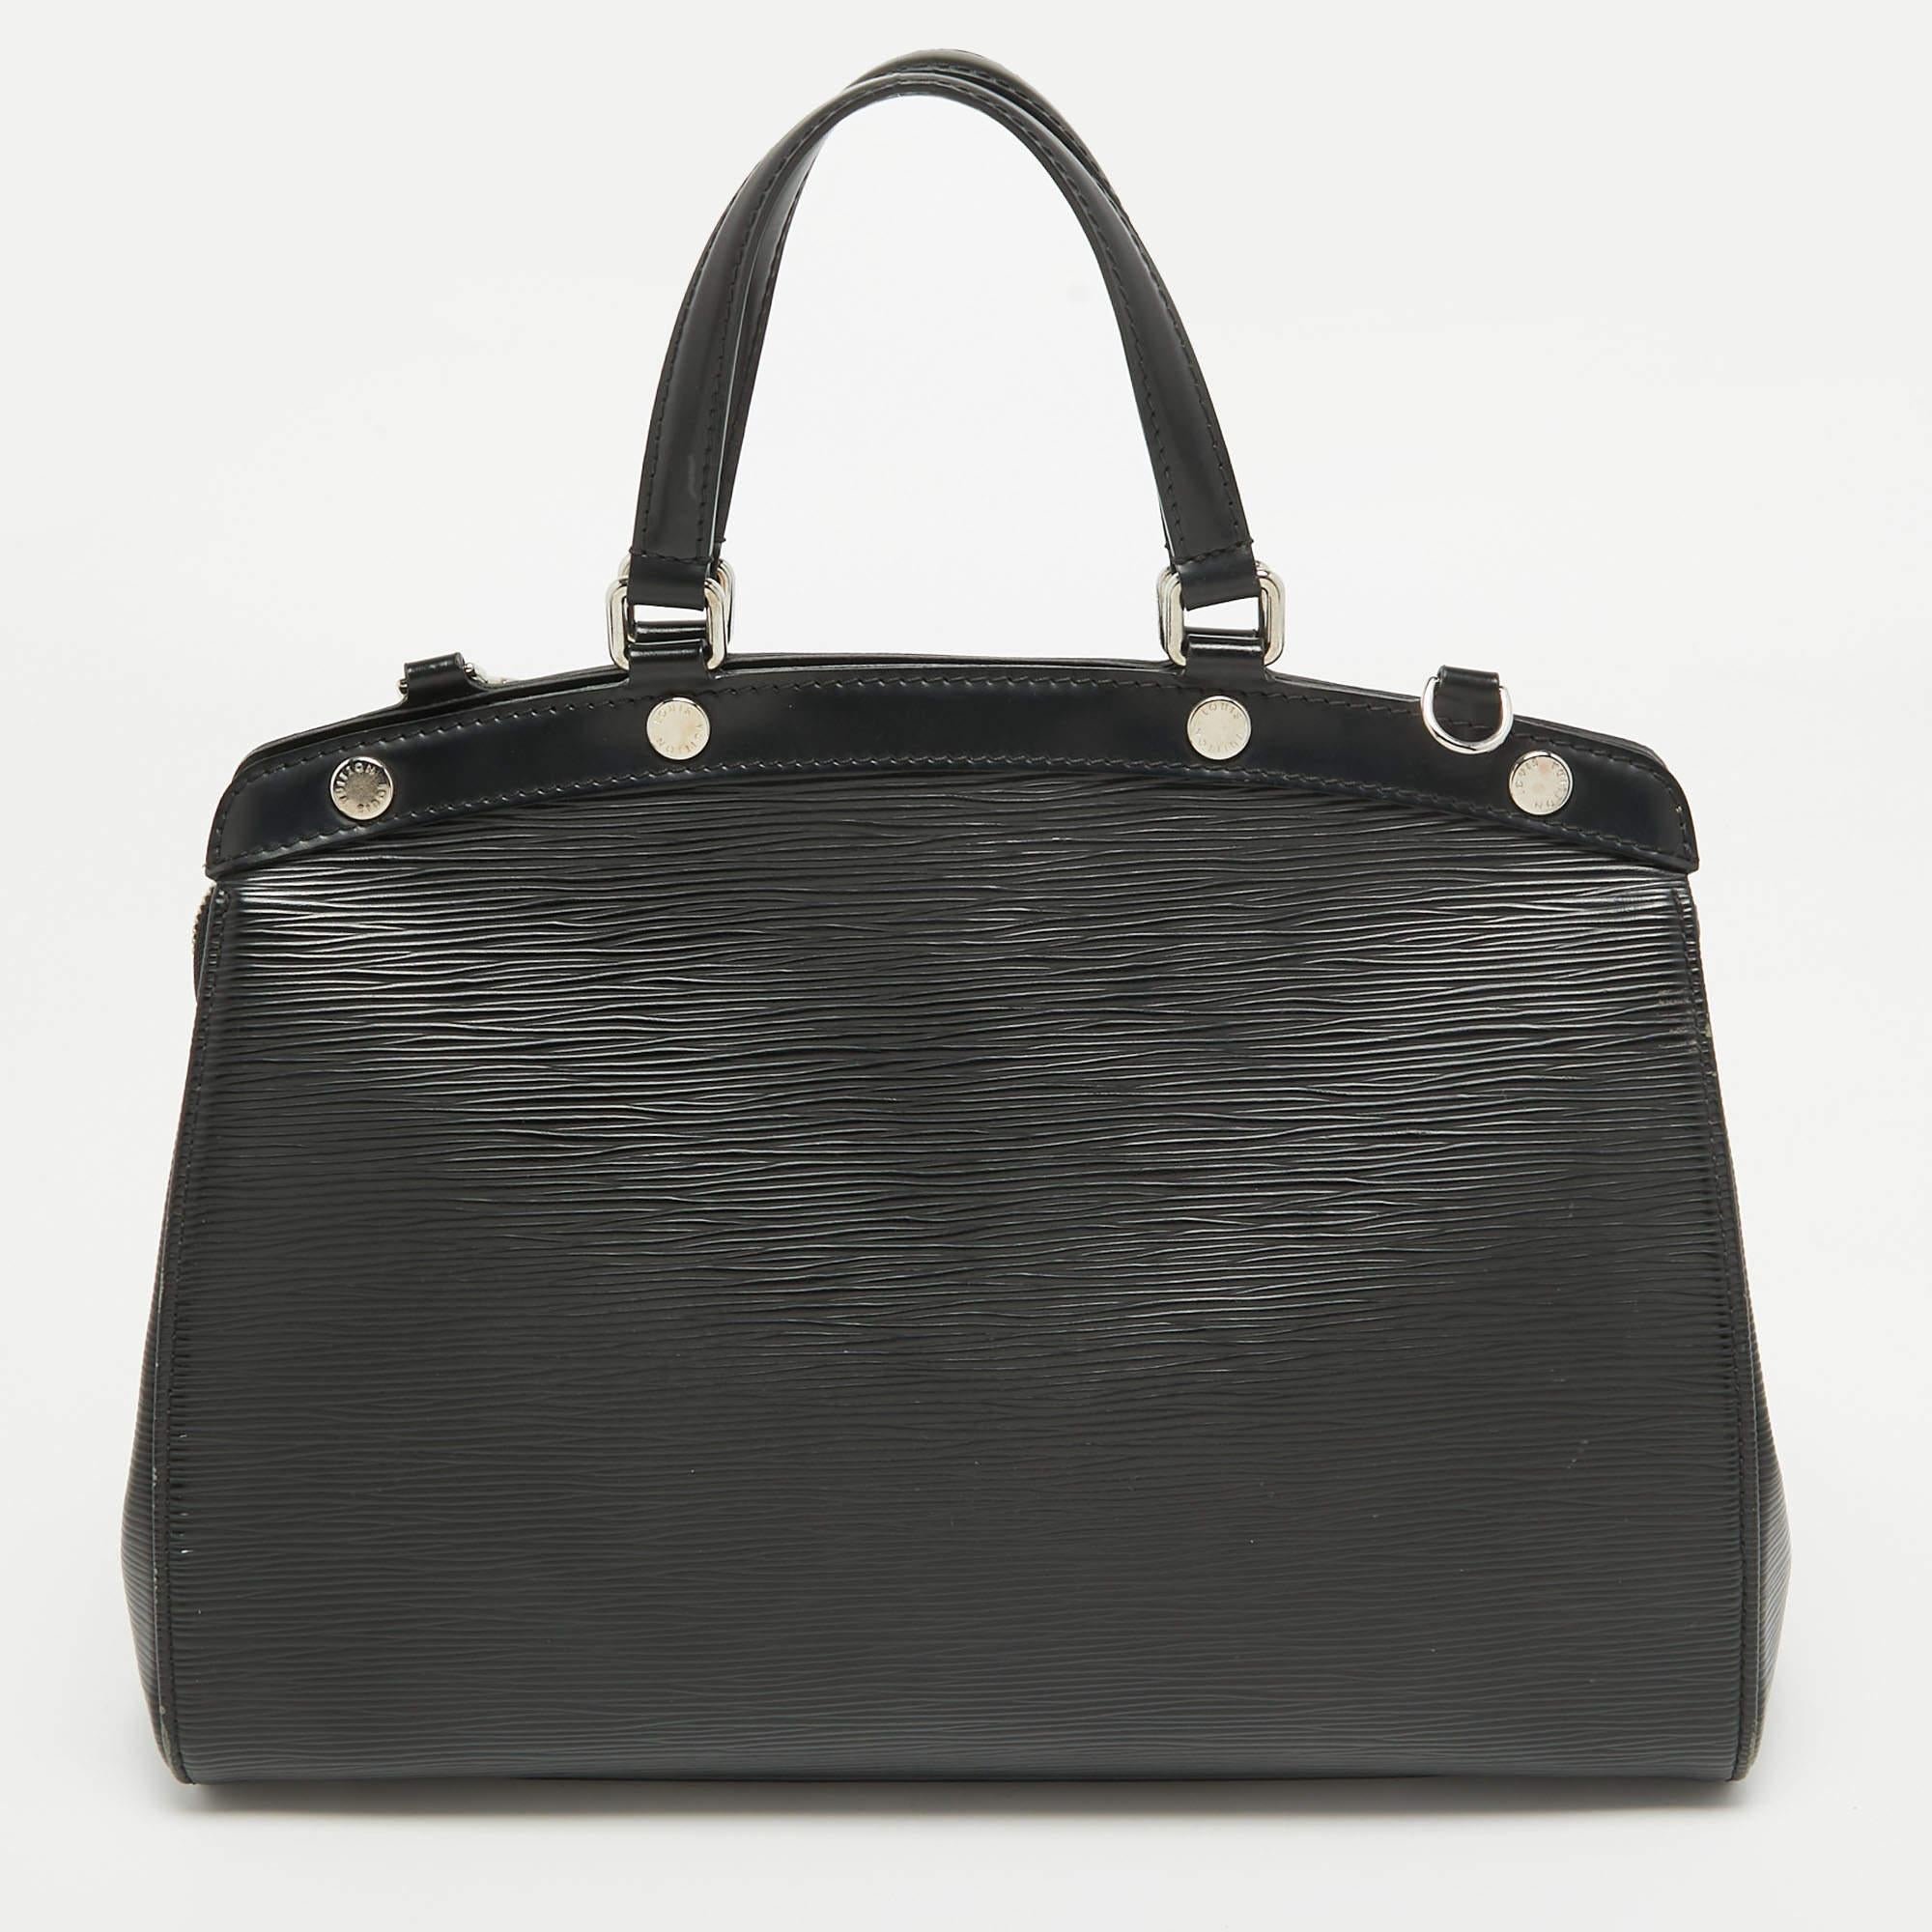 Diese Louis Vuitton Brea Tasche zeichnet sich durch ihren Glanzeffekt und ihre markante Silhouette aus. Die aus schwarzem Epi-Leder gefertigte Tasche verfügt über zwei Tragemöglichkeiten und ein geräumiges, mit Stoff gefüttertes Innenleben. Die